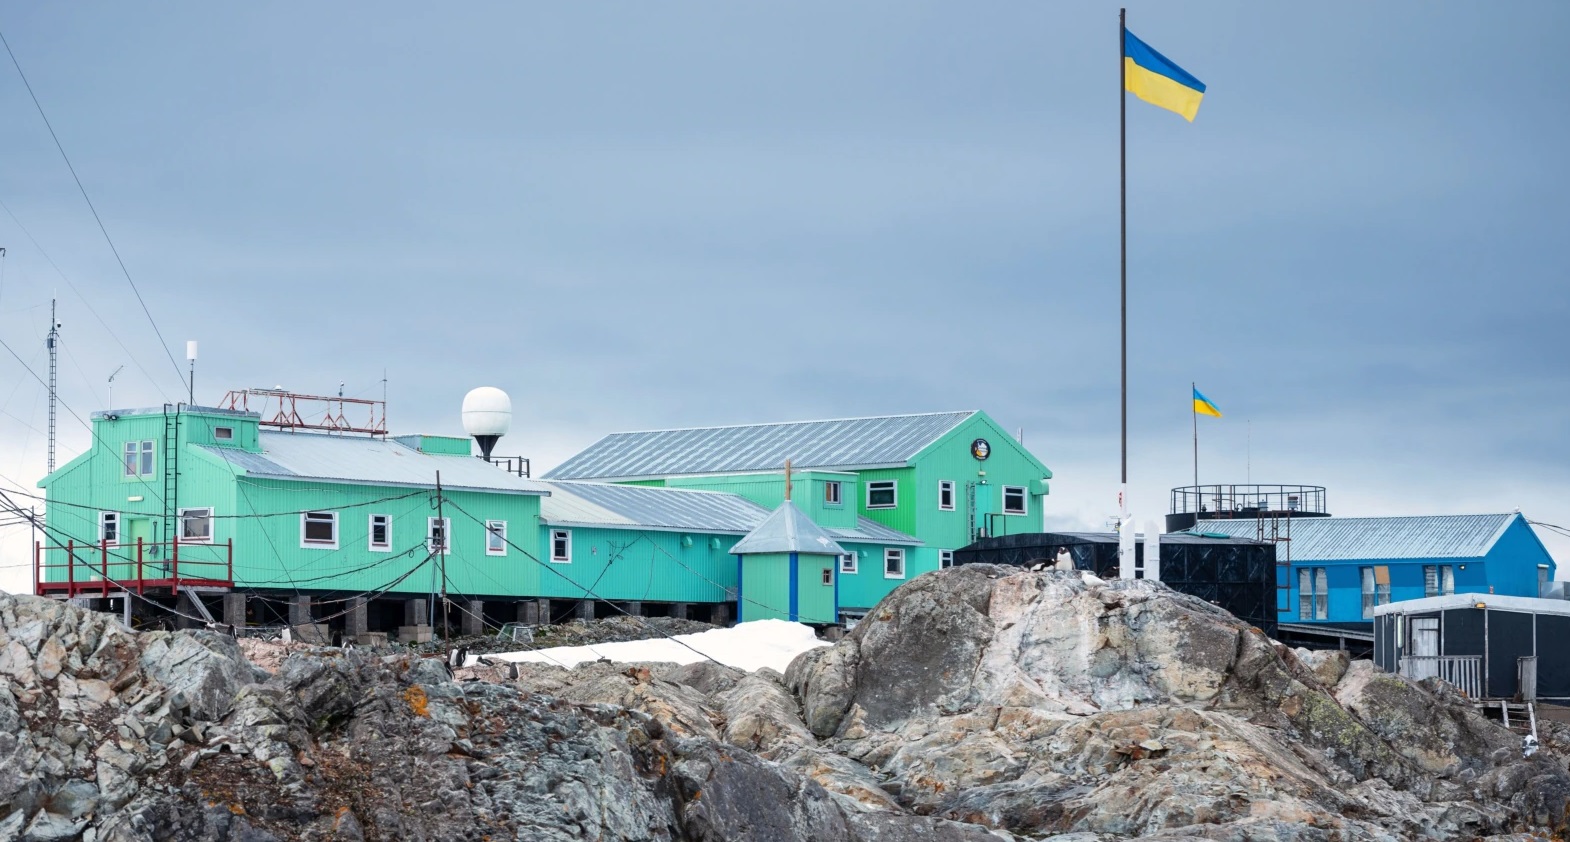 Півострів Київ в Антарктиці зареєстрували і як Kyiv Peninsula, в українському написанні